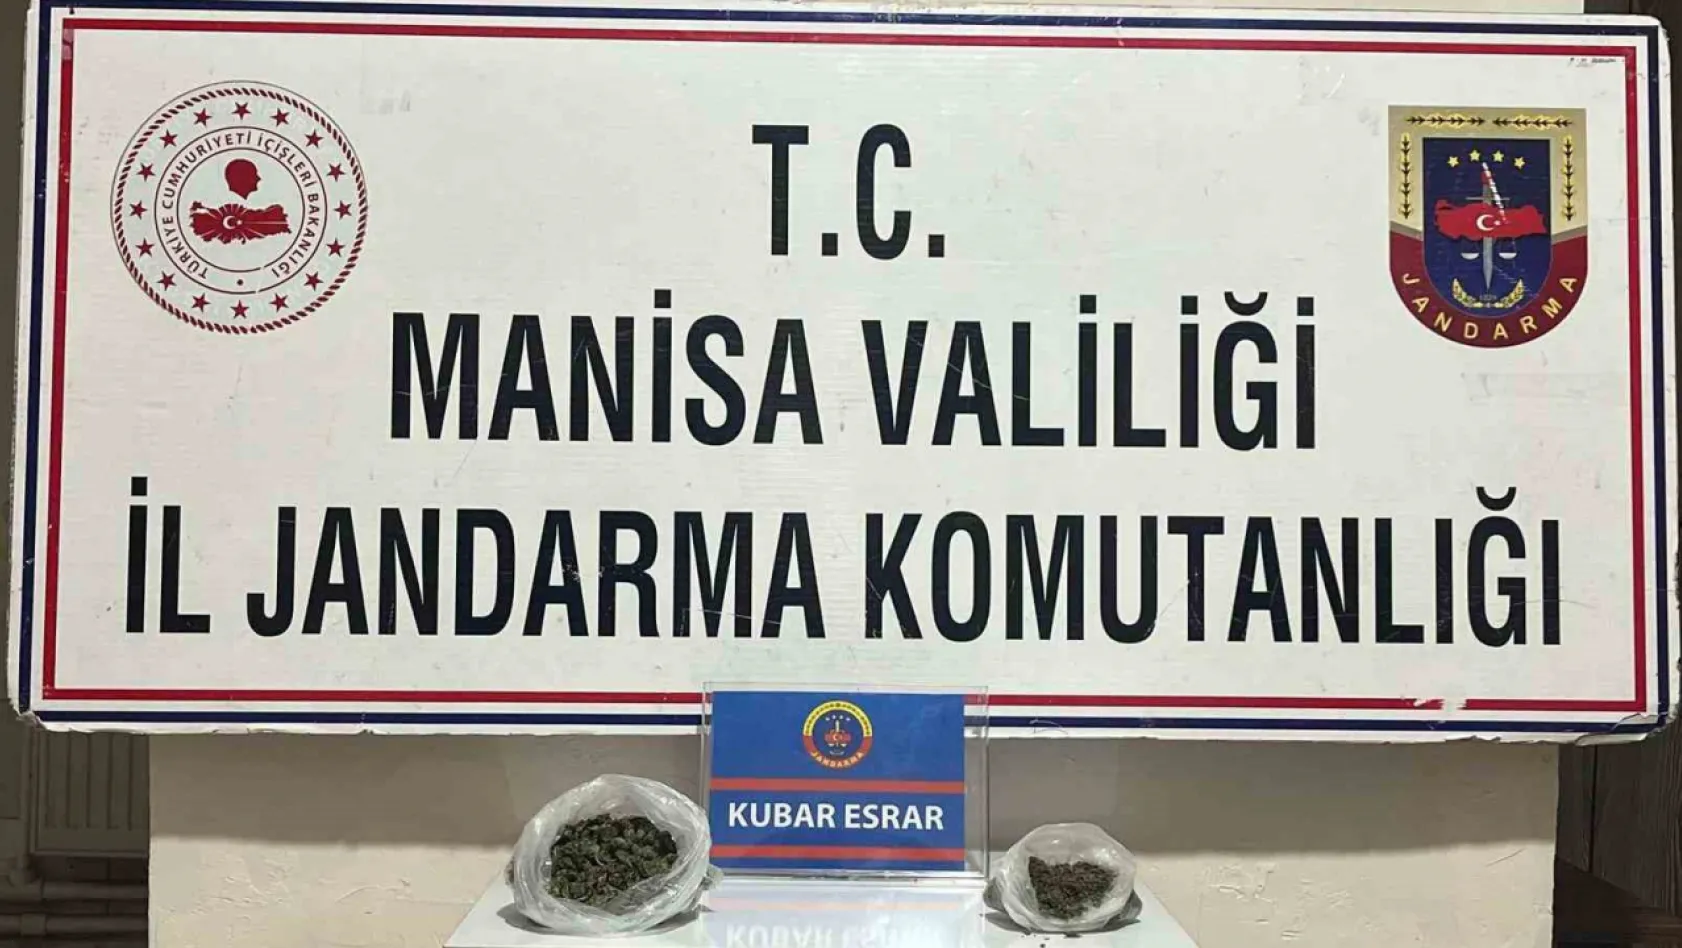 Manisa'da Şüpheliden 102 gram kubar esrar çıktı